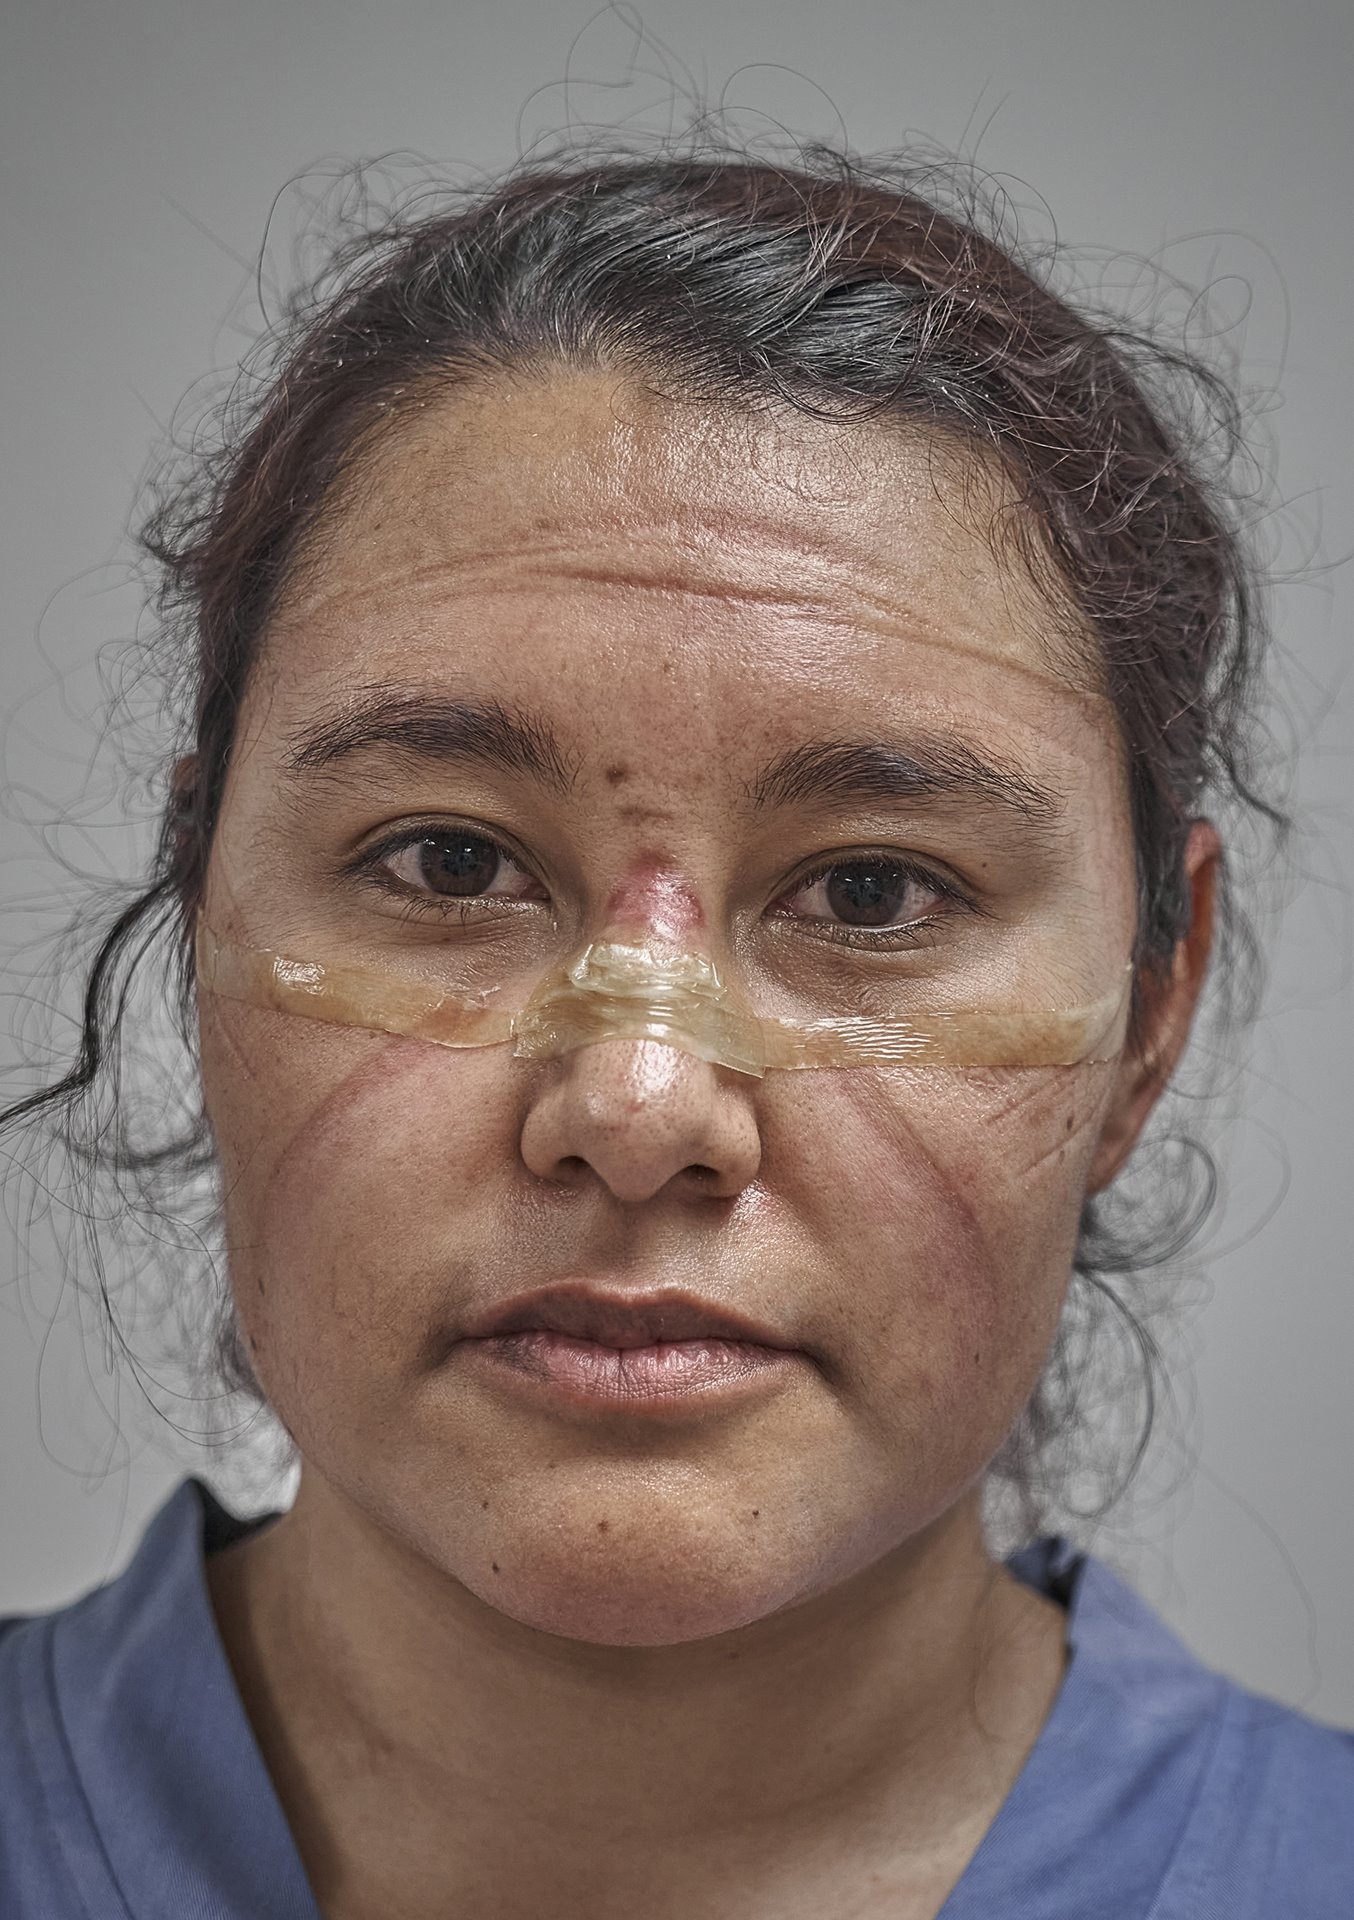 2 место в категории Портреты, 2021. Доктор в конце смены со следами от защитной маски, Мехико, Мексика, 19 мая 2020 года. Автор Иван Масиас